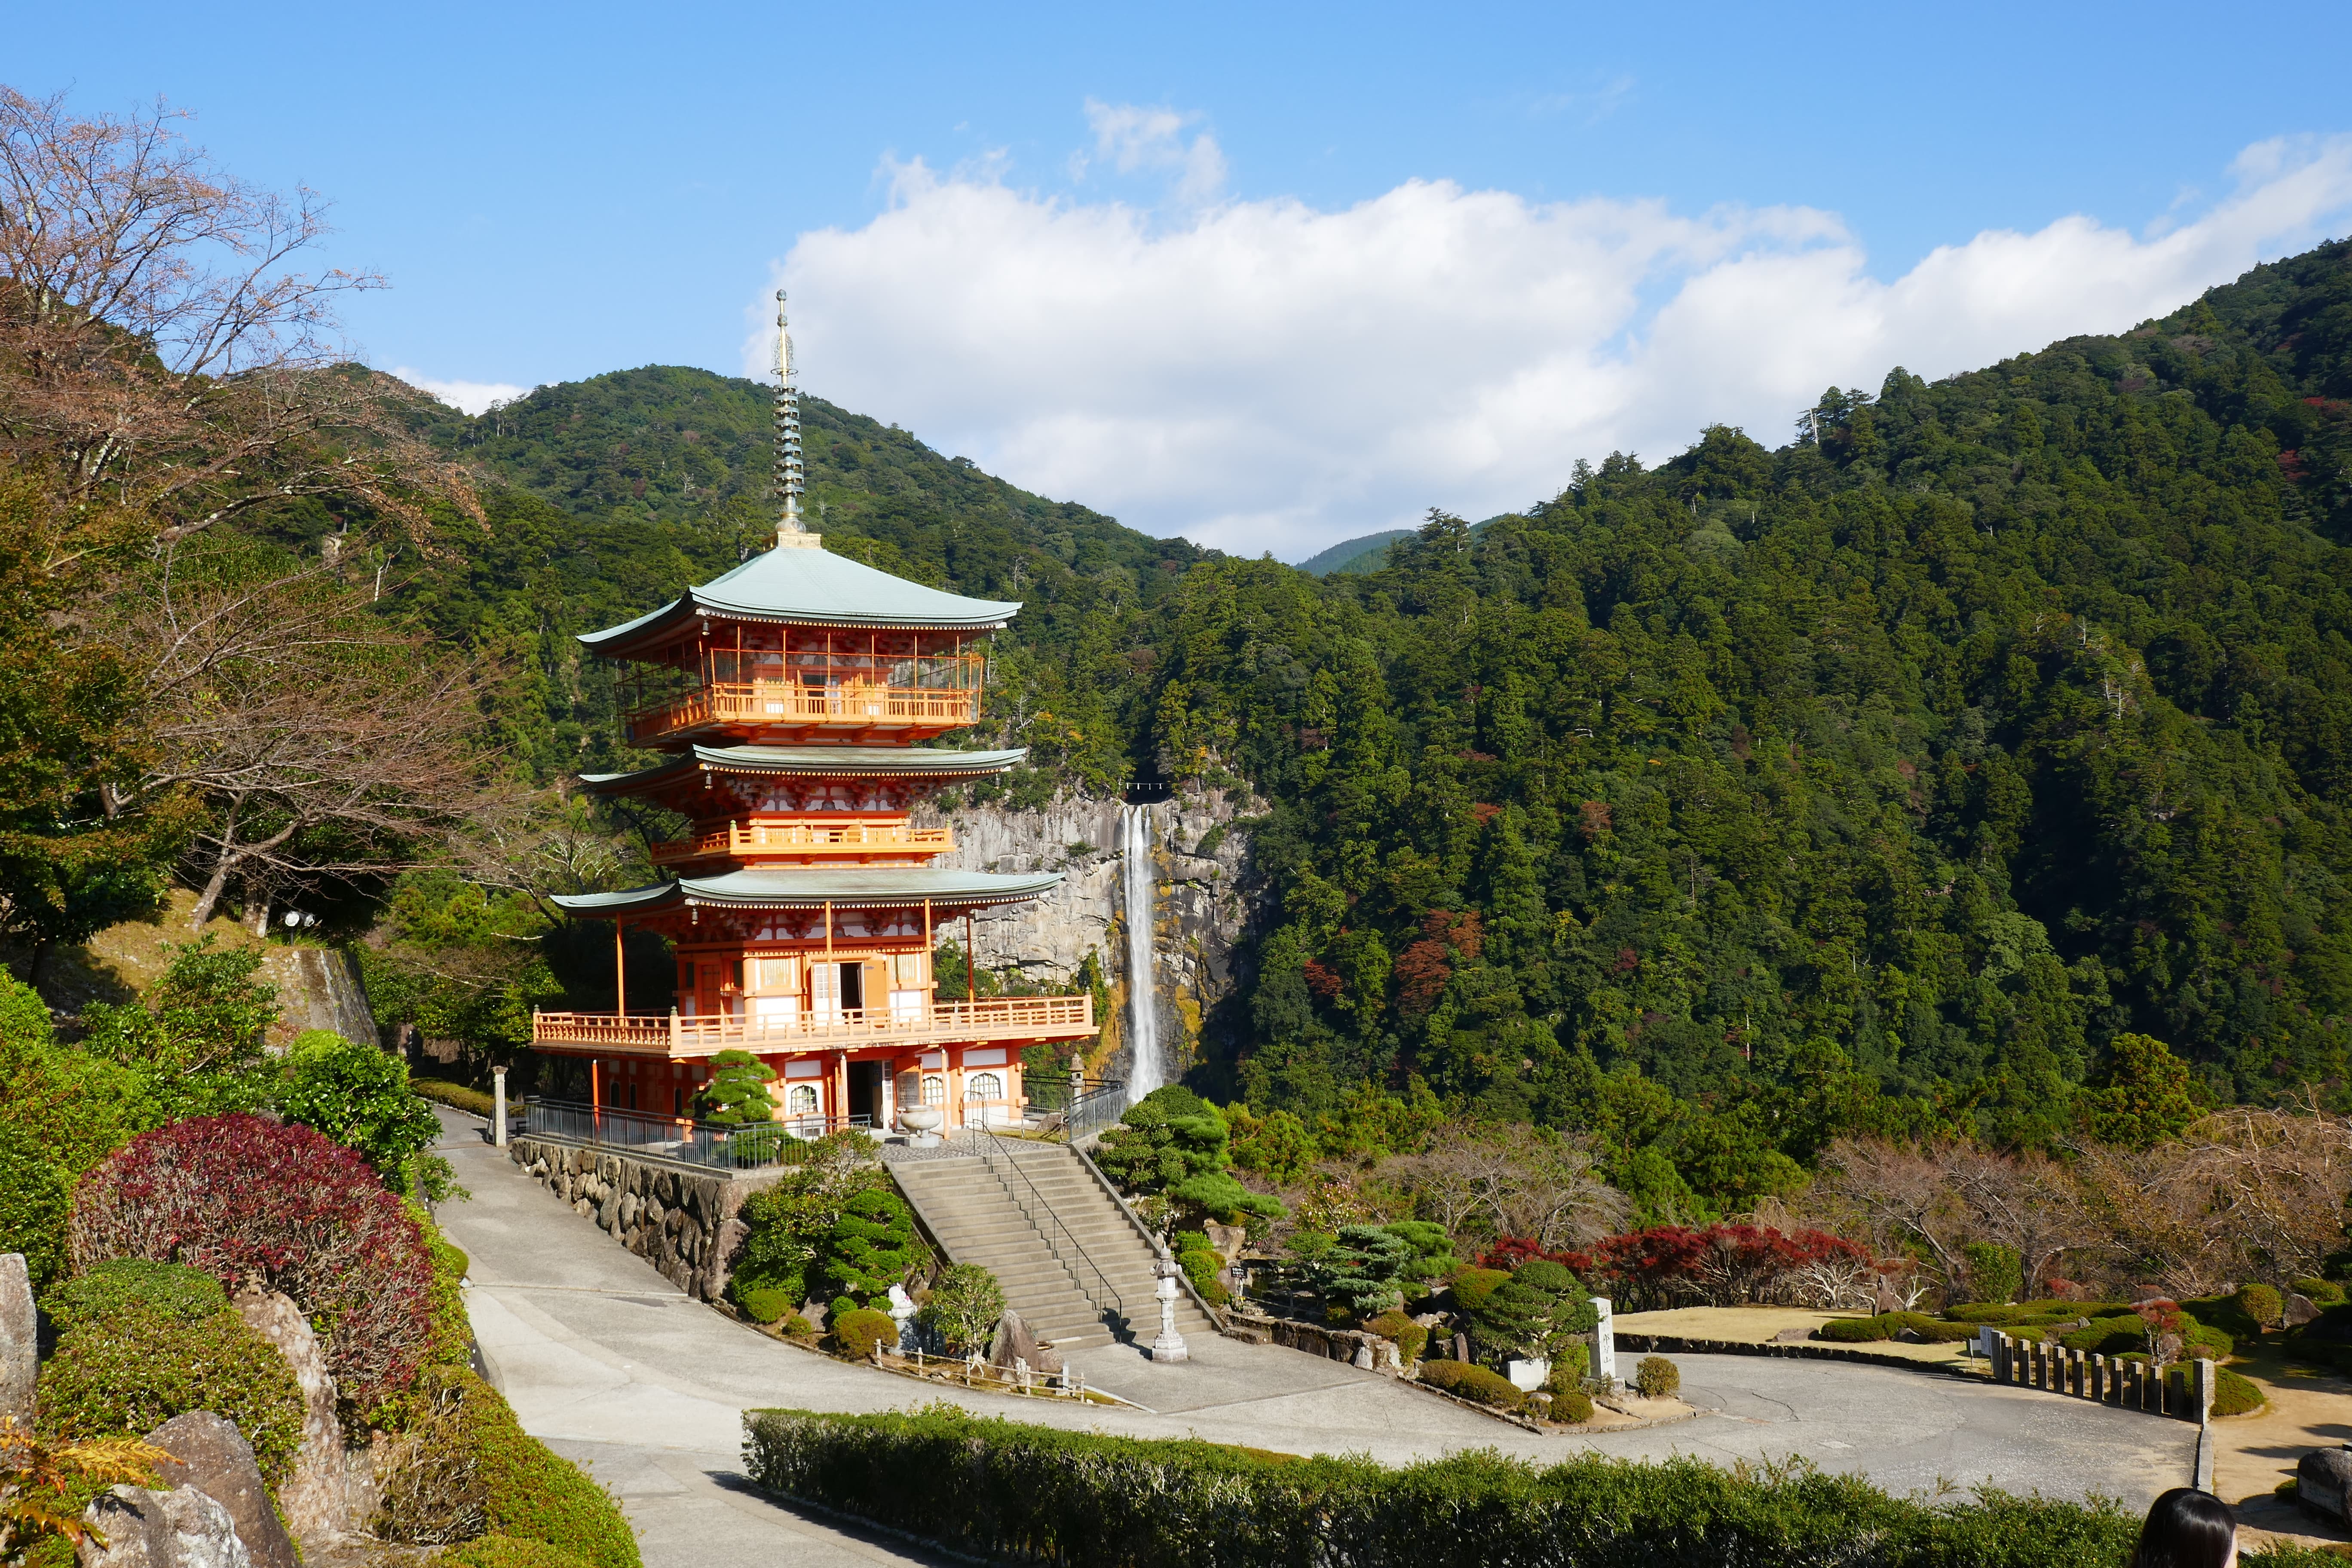 Der Wasserfall neben dem Heiligtum in den Kii-Bergen bietet den idealen Ort, um die innere Ruhe zu finden.